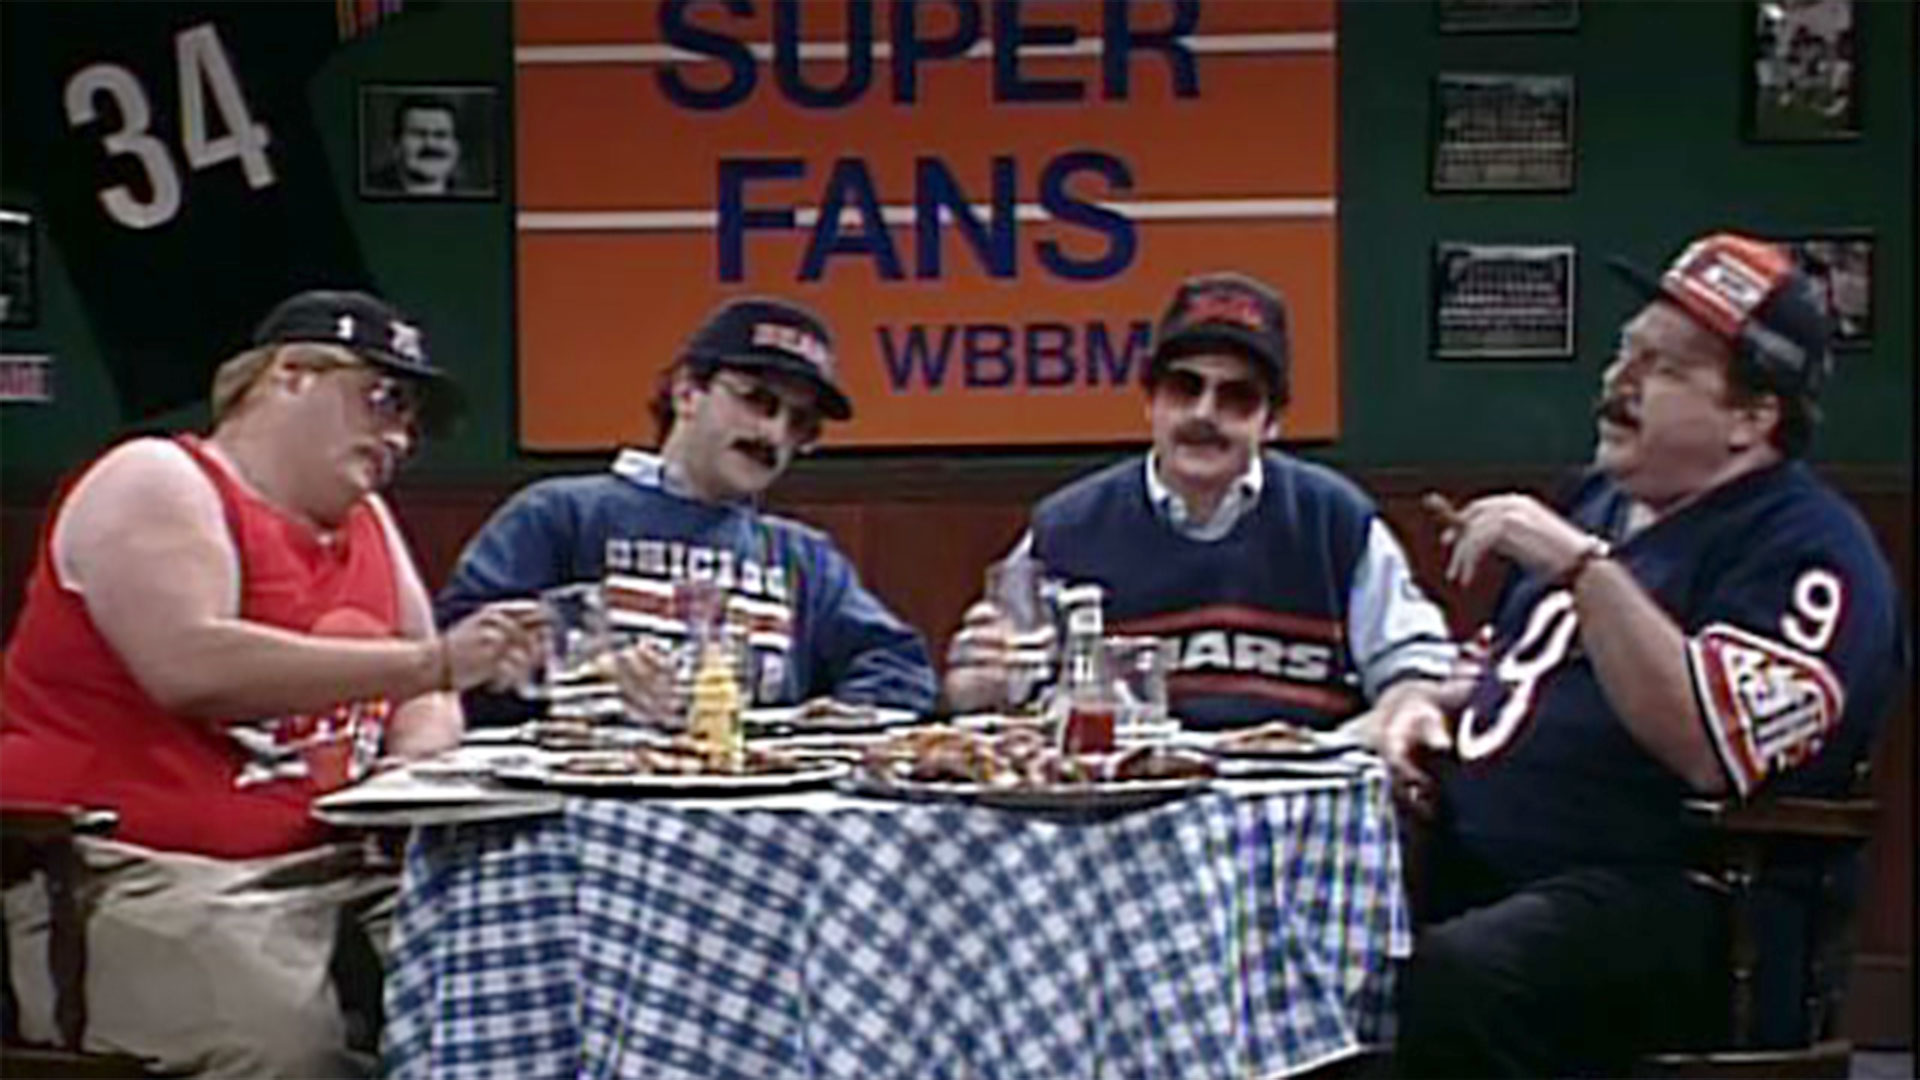 Watch Saturday Night Live Highlight: Bill Swerski's Super Fans - NBC.com